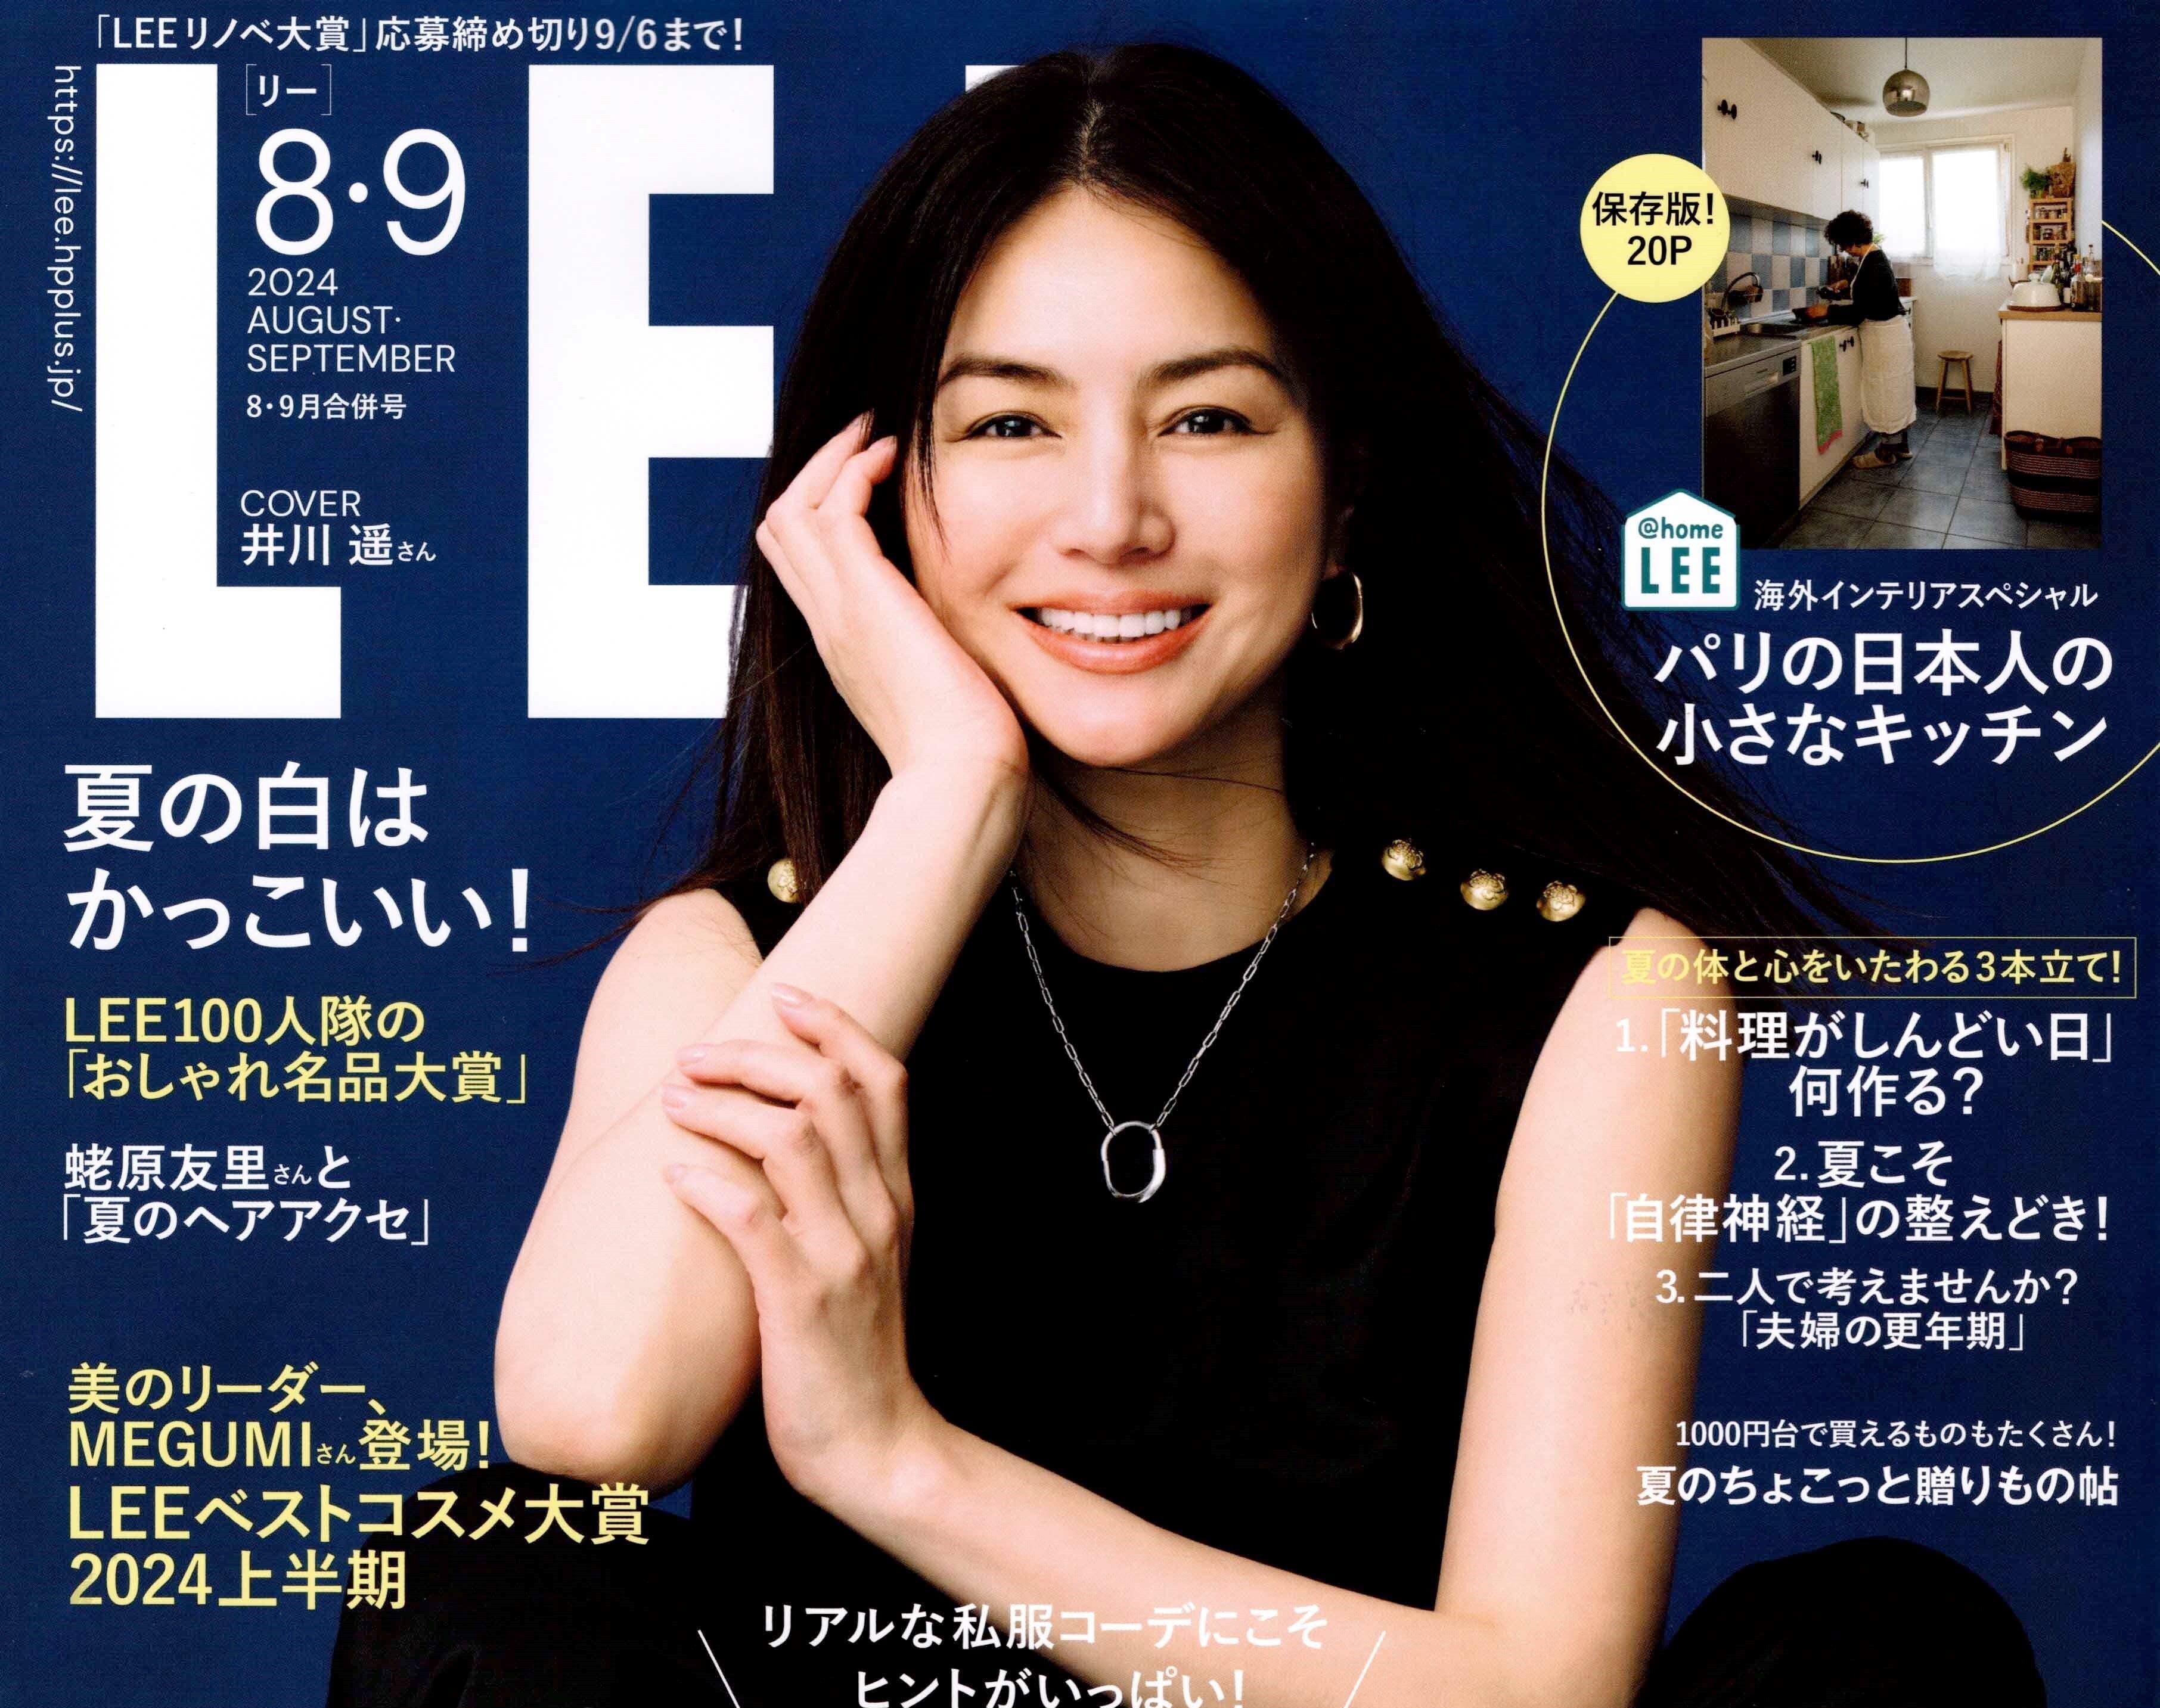 雑誌「LEE」7・8月合併号 に掲載されました